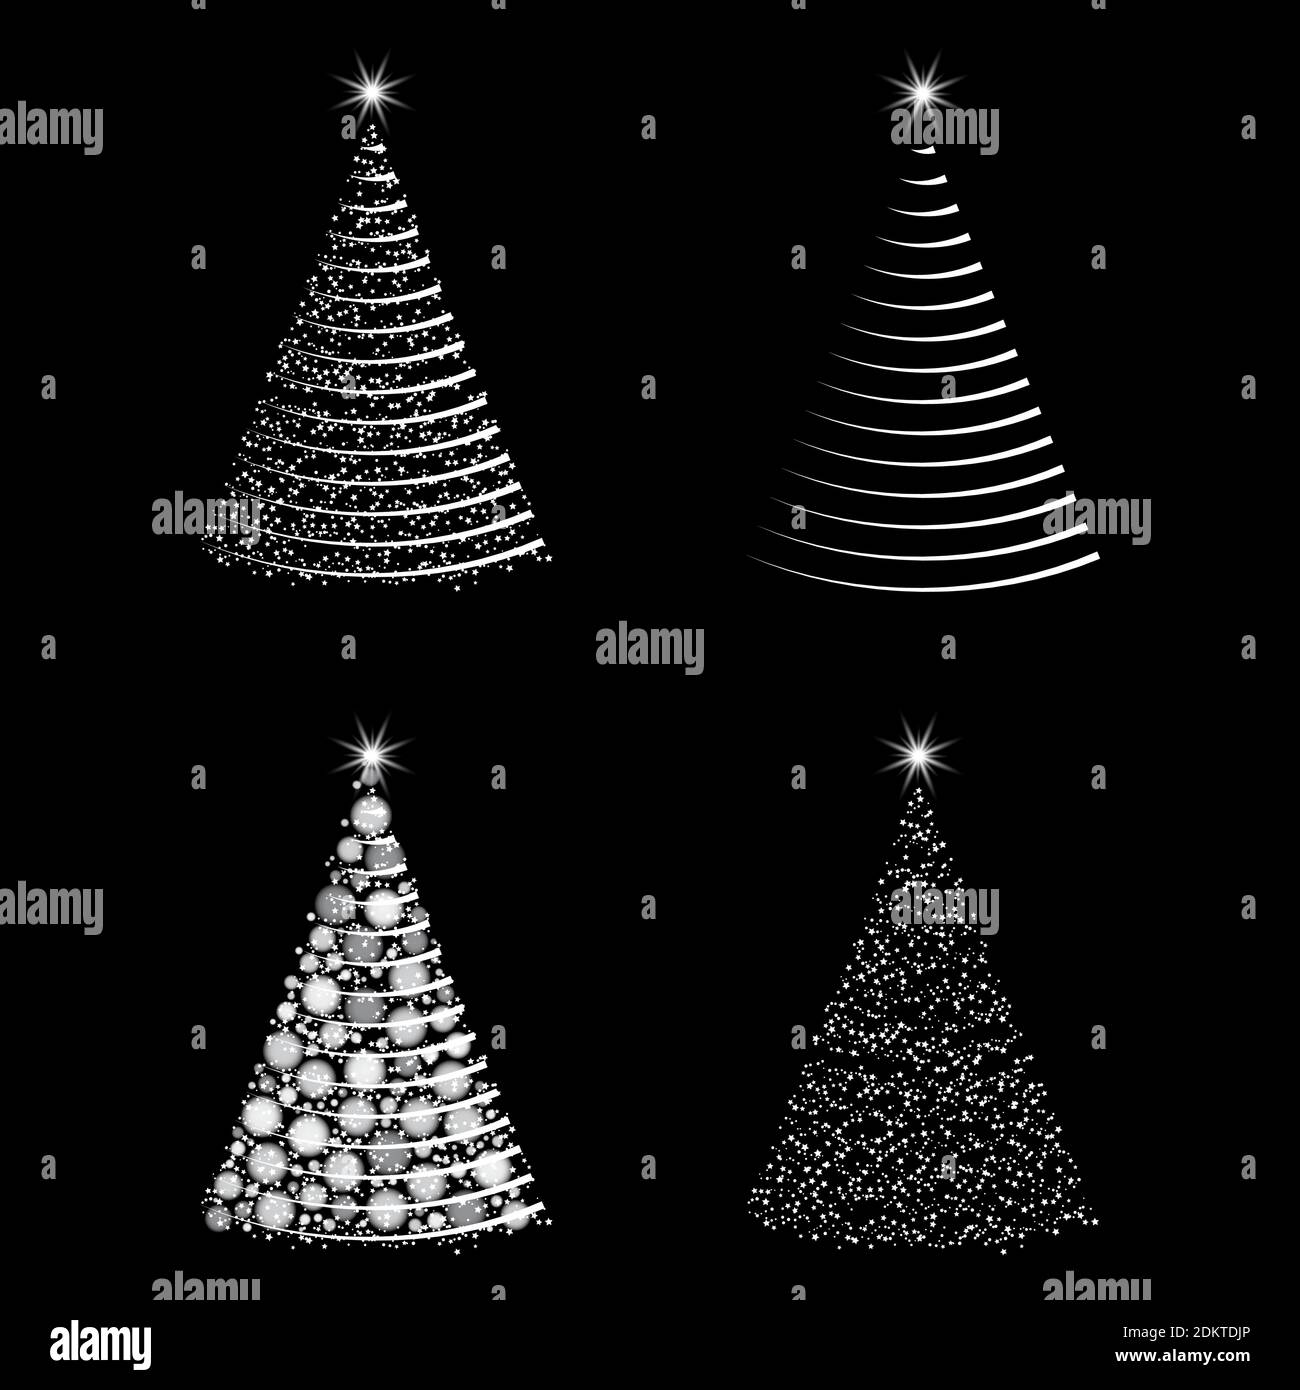 Beleuchteter weihnachtsbaum-Set. Glühender Tannenbaum mit weihnachtsbeleuchtung Kollektion. Abstraktes Urlaubssymbol mit Lichteffekt. Vorlagendesign für WIN Stock Vektor